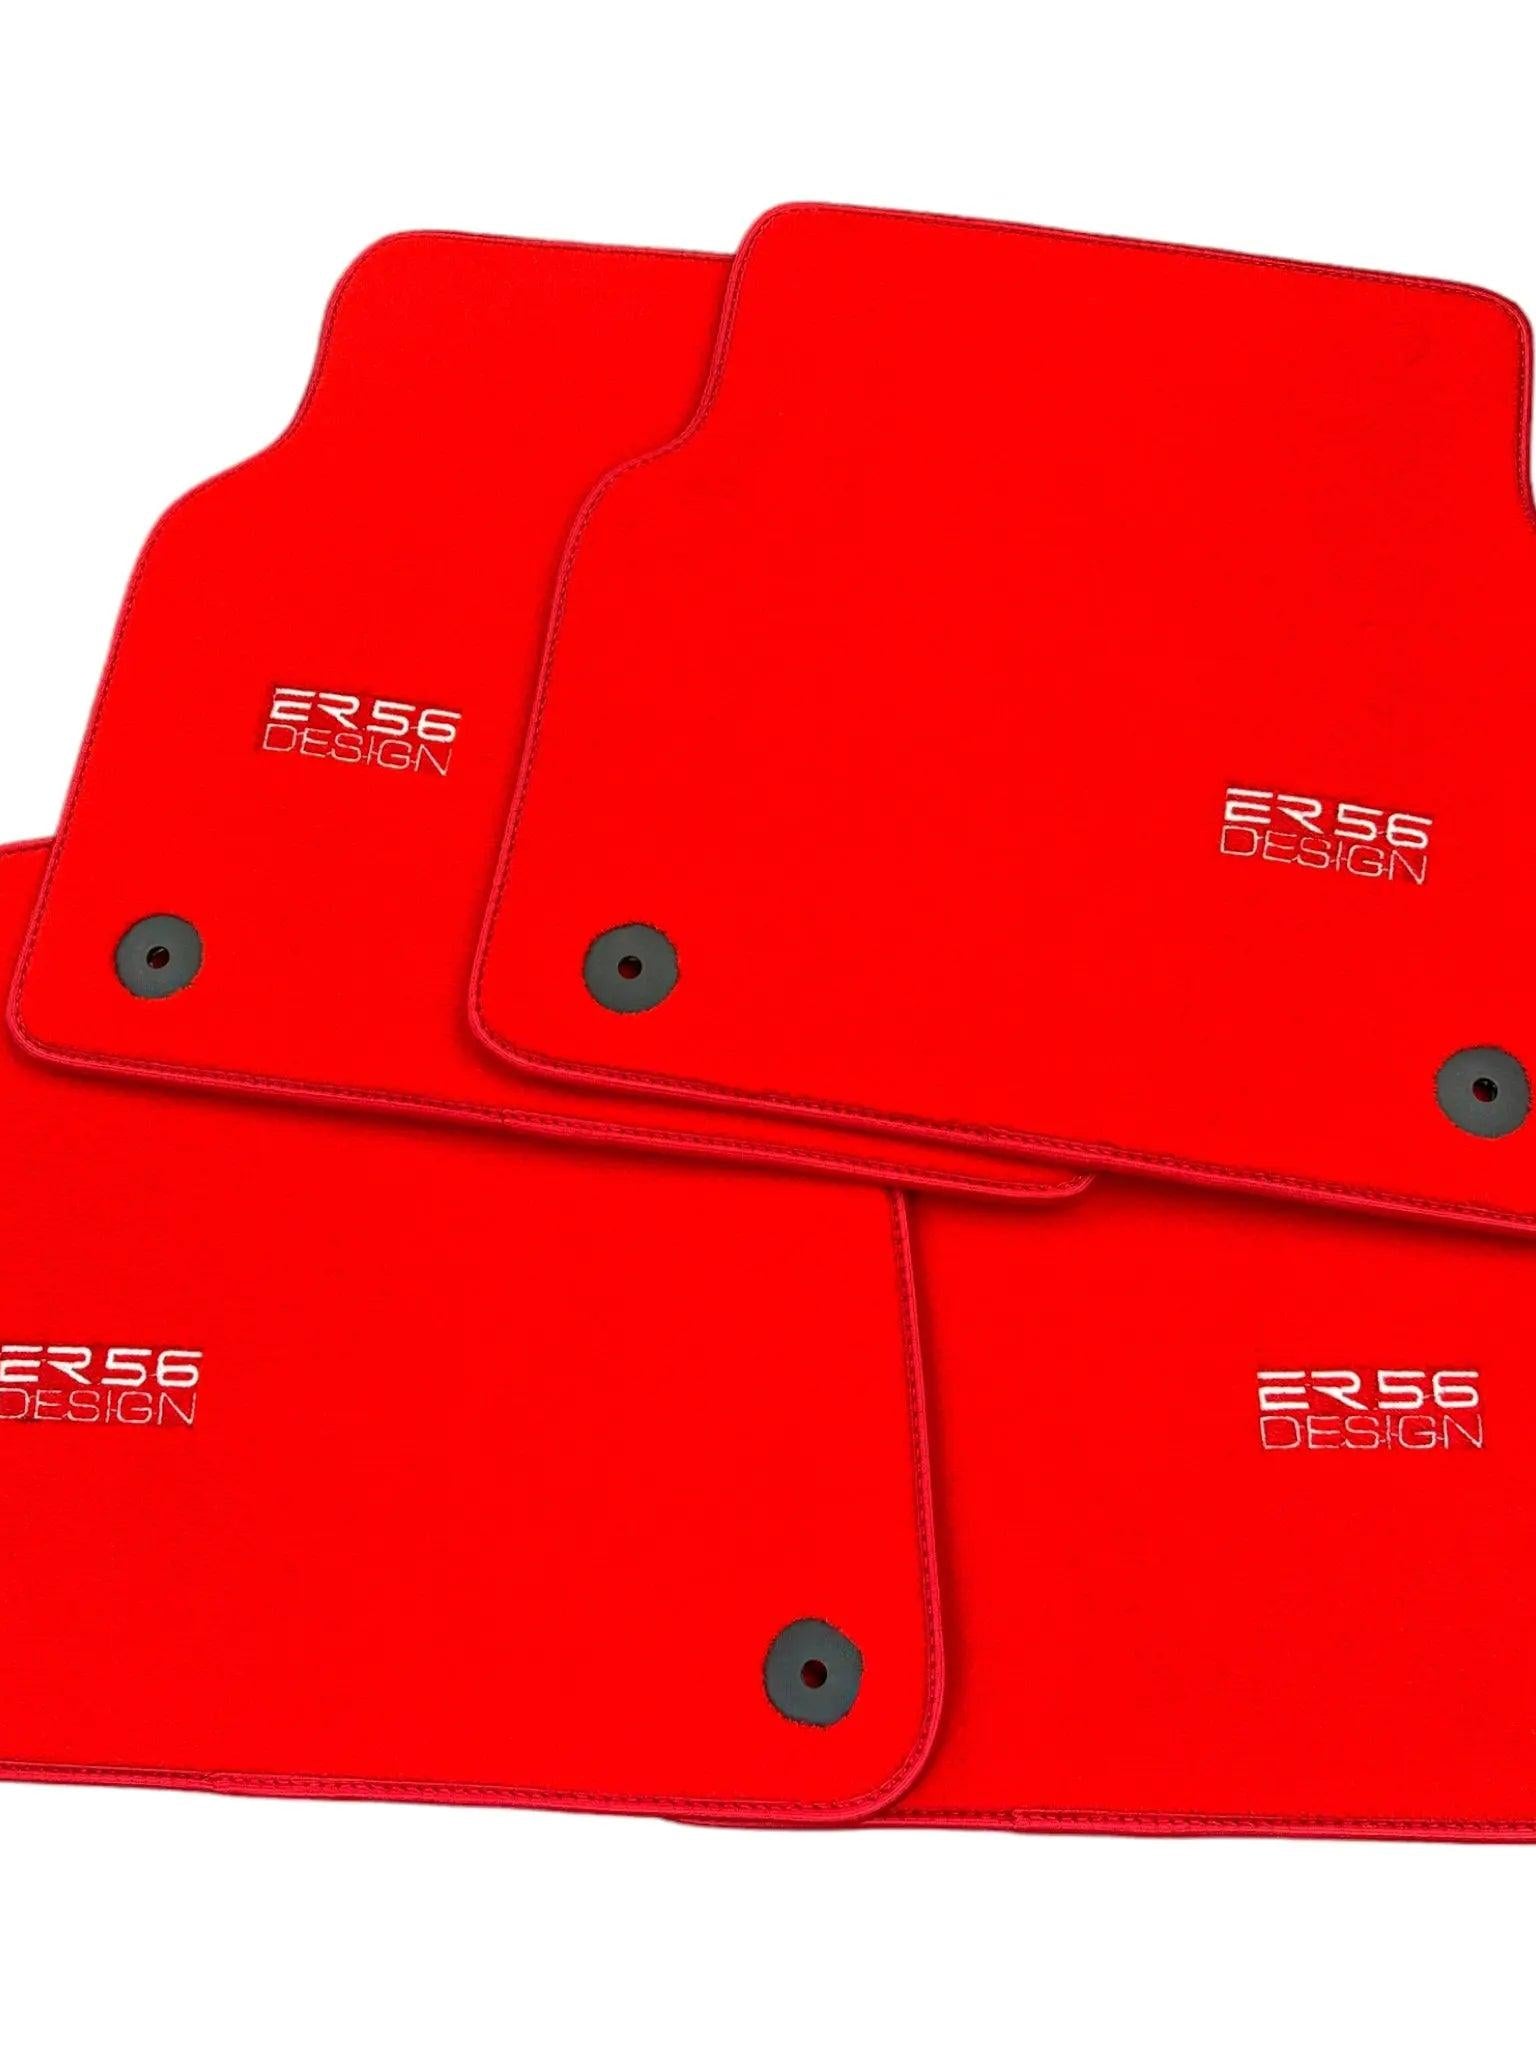 Red Floor Mats for Audi A3 - 3-door Hatchback (1996-2000) | ER56 Design